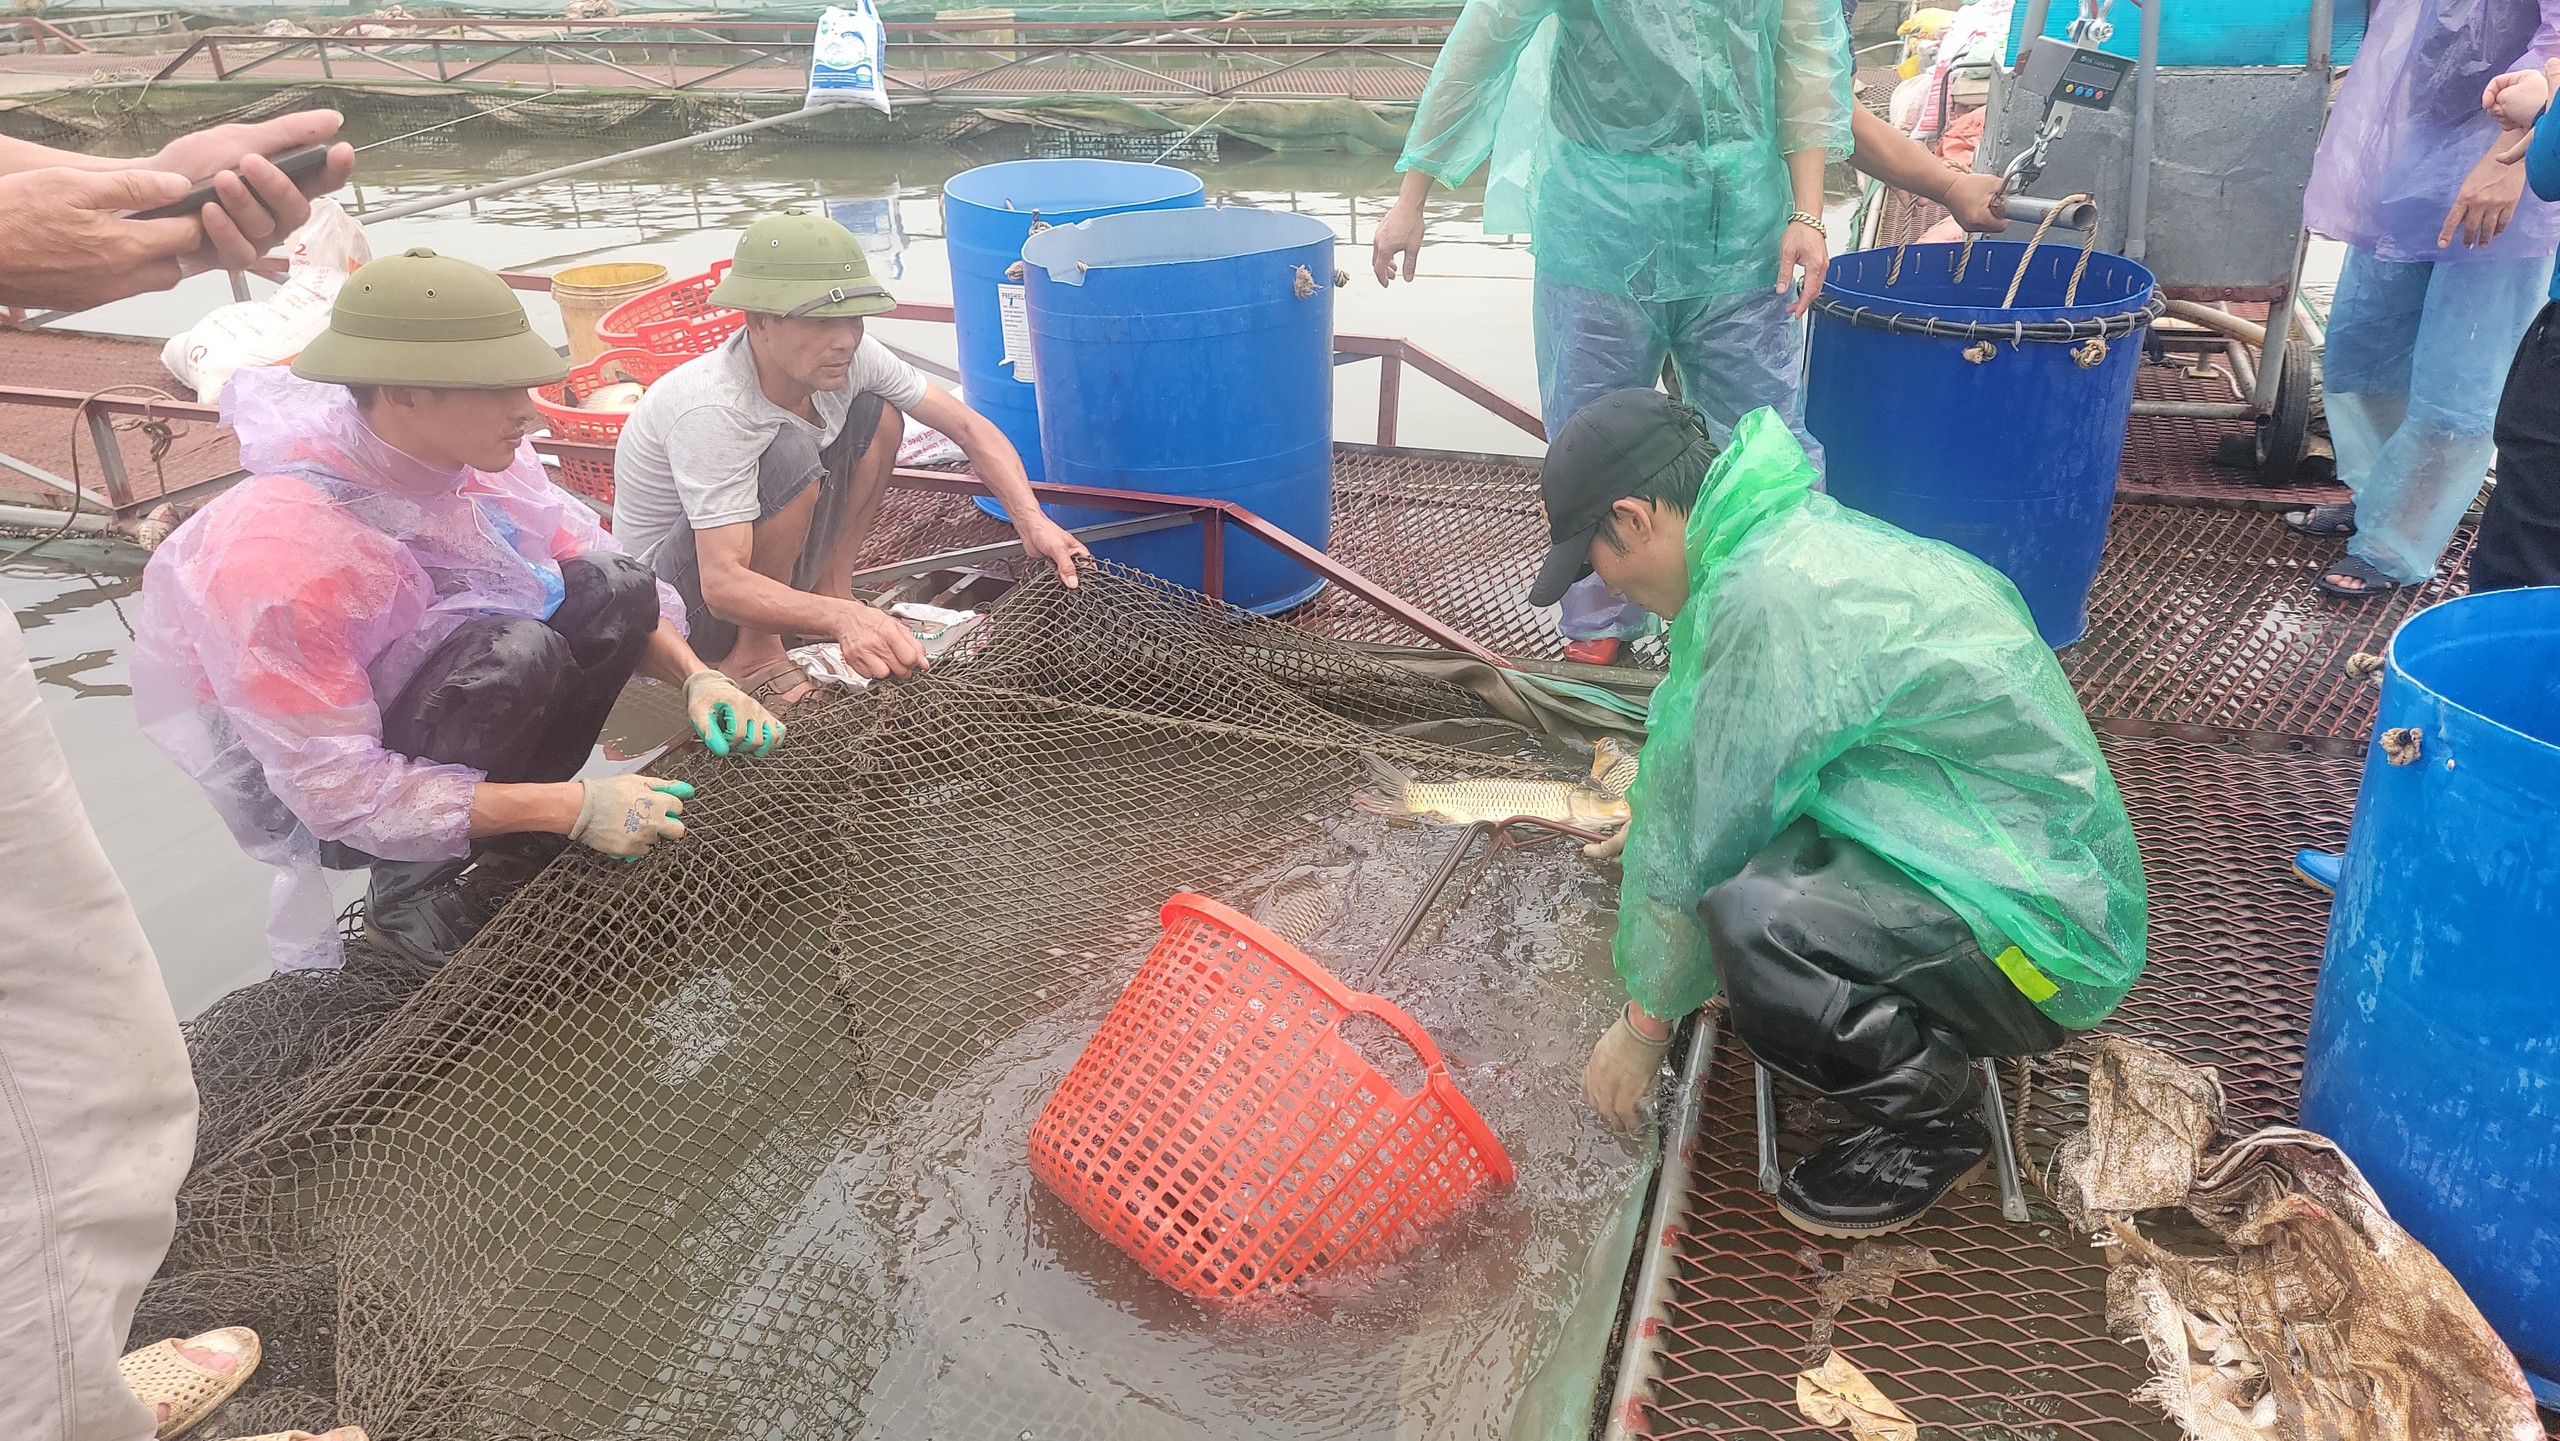 Trăm tấn cá chết bất thường trên sông Thái Bình ở TP Hải Dương, dân buồn hụt hẫng, có nhà "trôi tiền tỷ"- Ảnh 1.